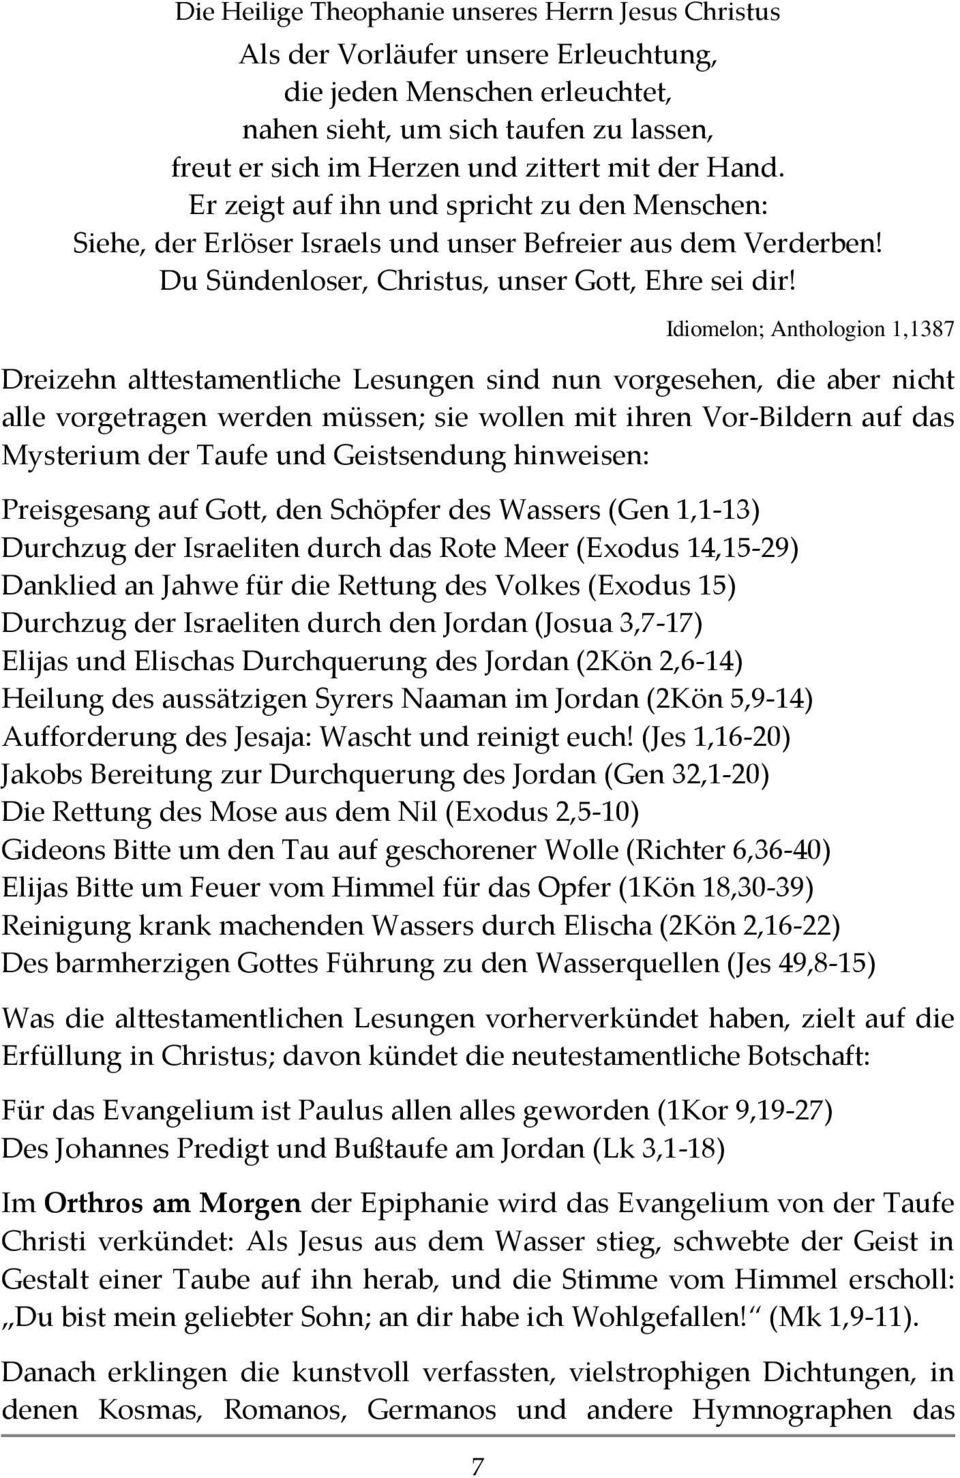 Idiomelon; Anthologion 1,1387 Dreizehn alttestamentliche Lesungen sind nun vorgesehen, die aber nicht alle vorgetragen werden müssen; sie wollen mit ihren Vor-Bildern auf das Mysterium der Taufe und